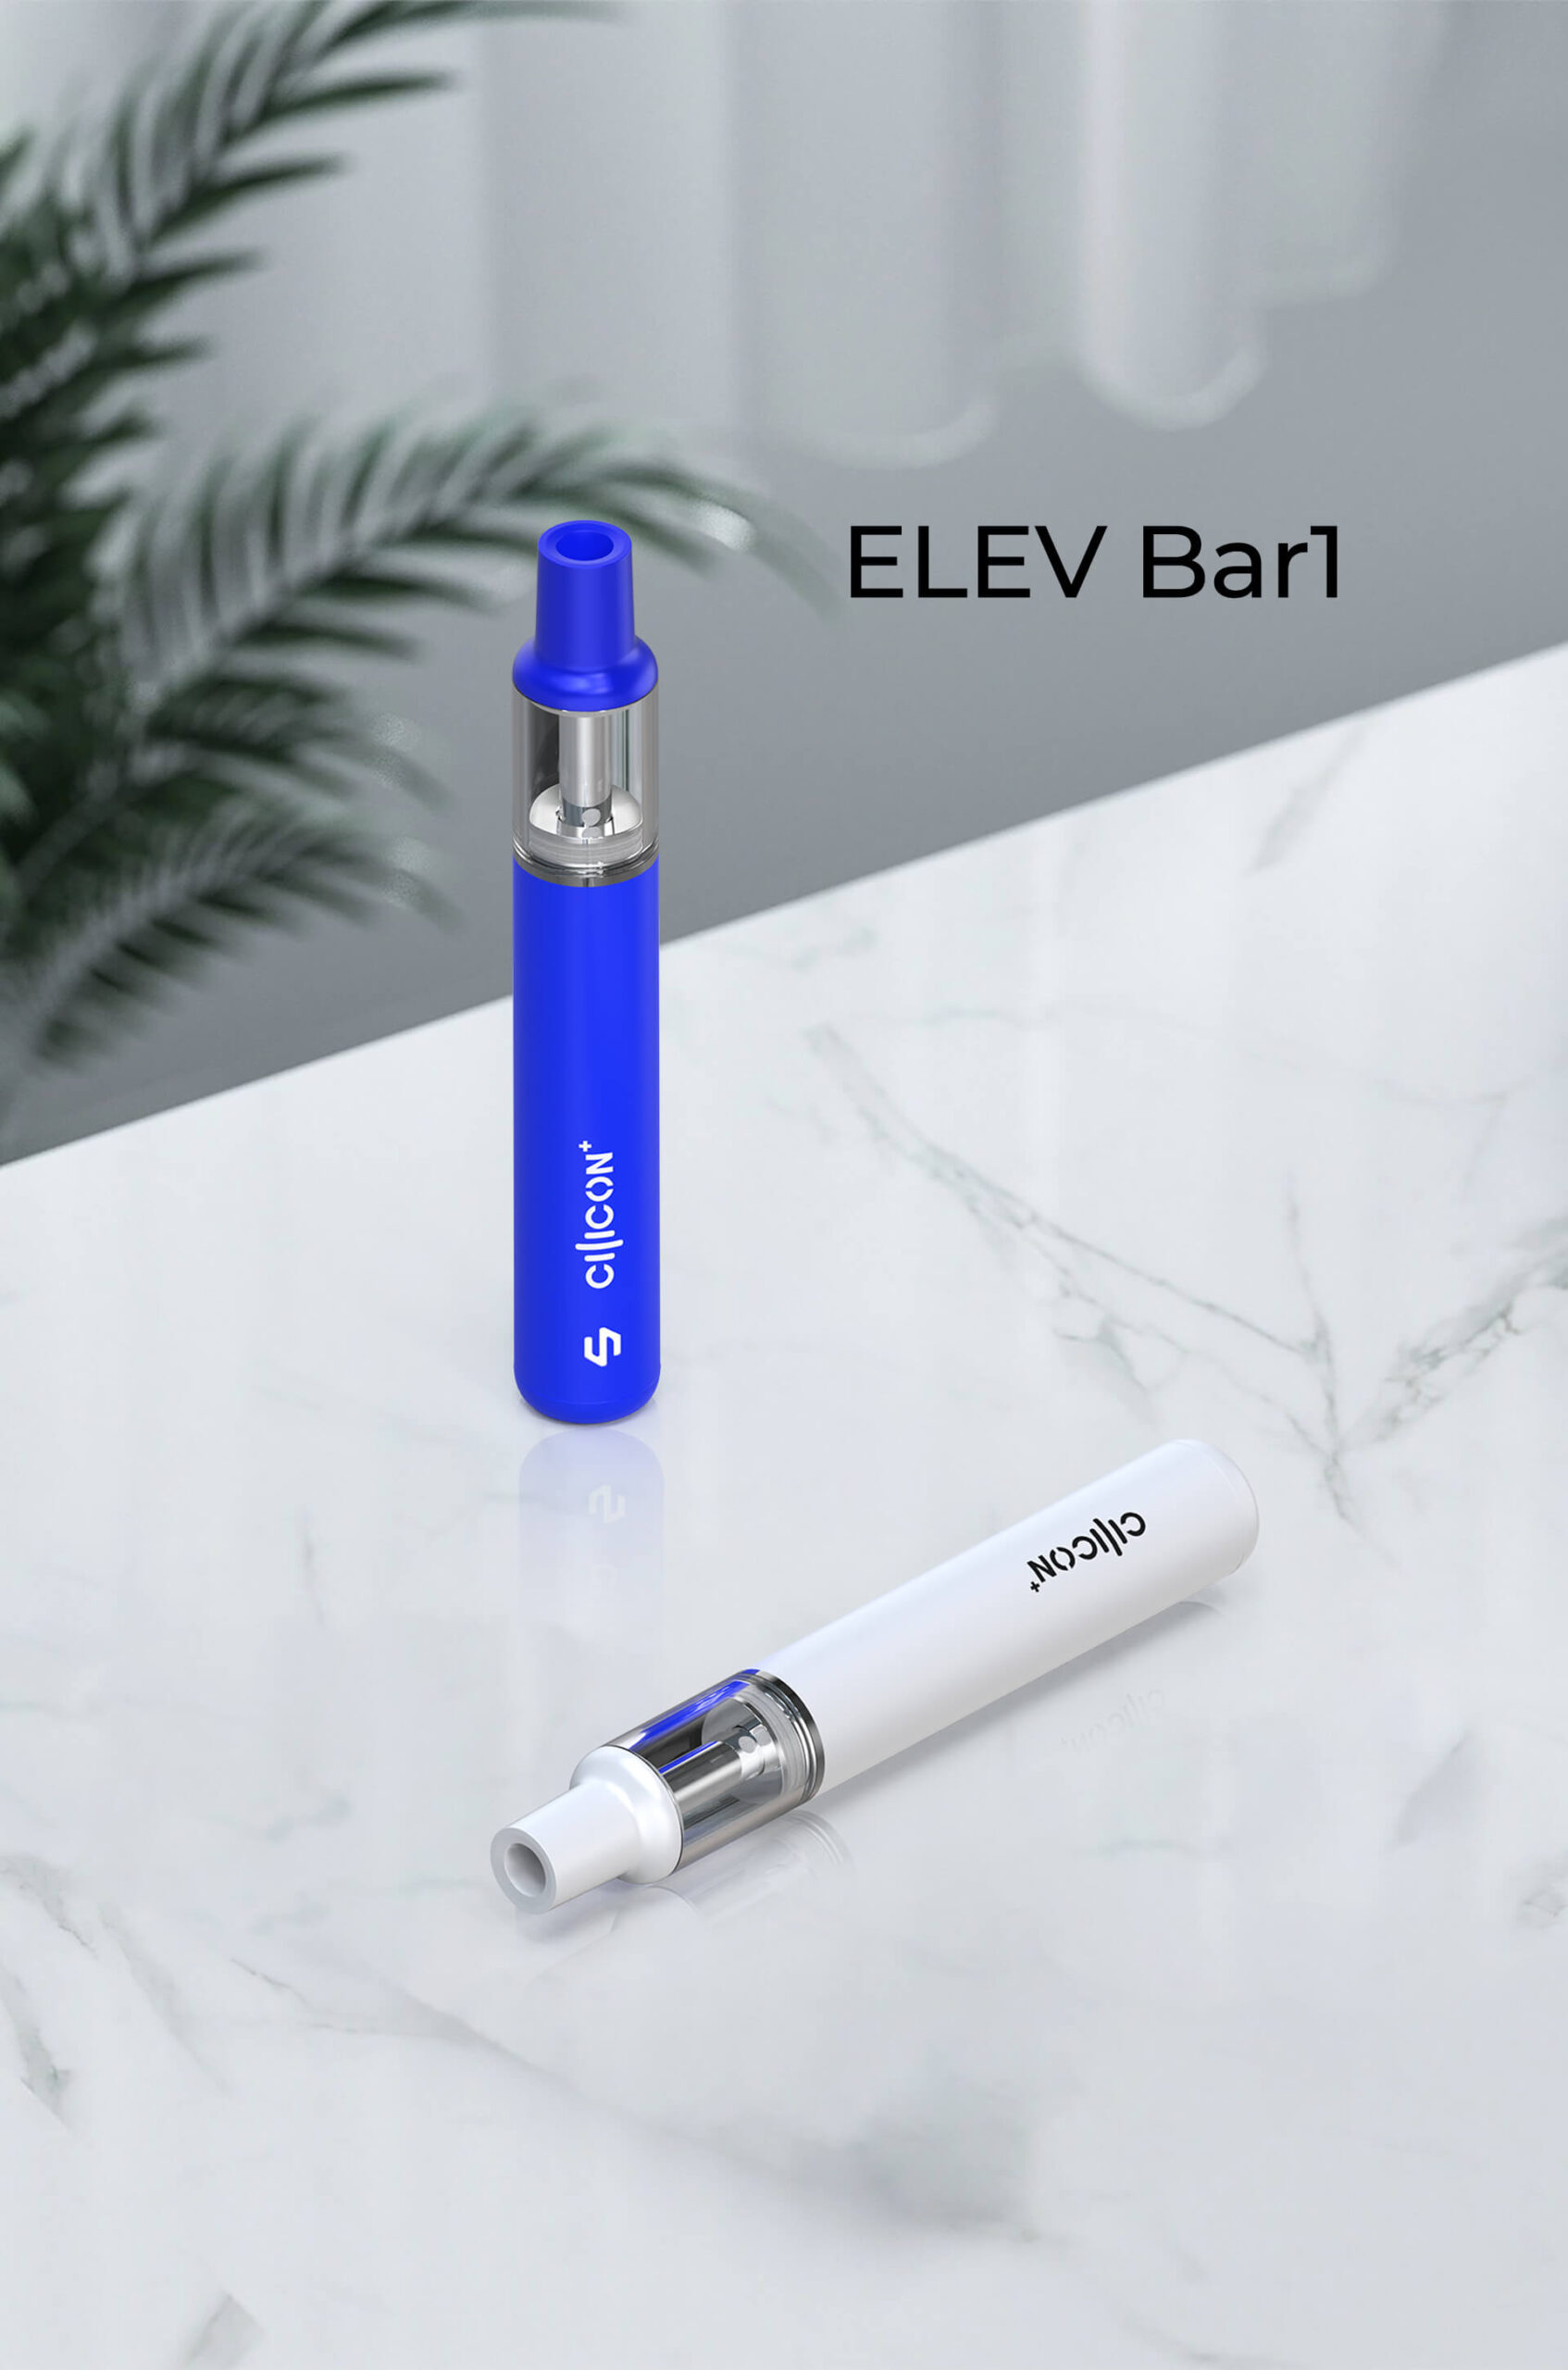 ELEV Bar1 